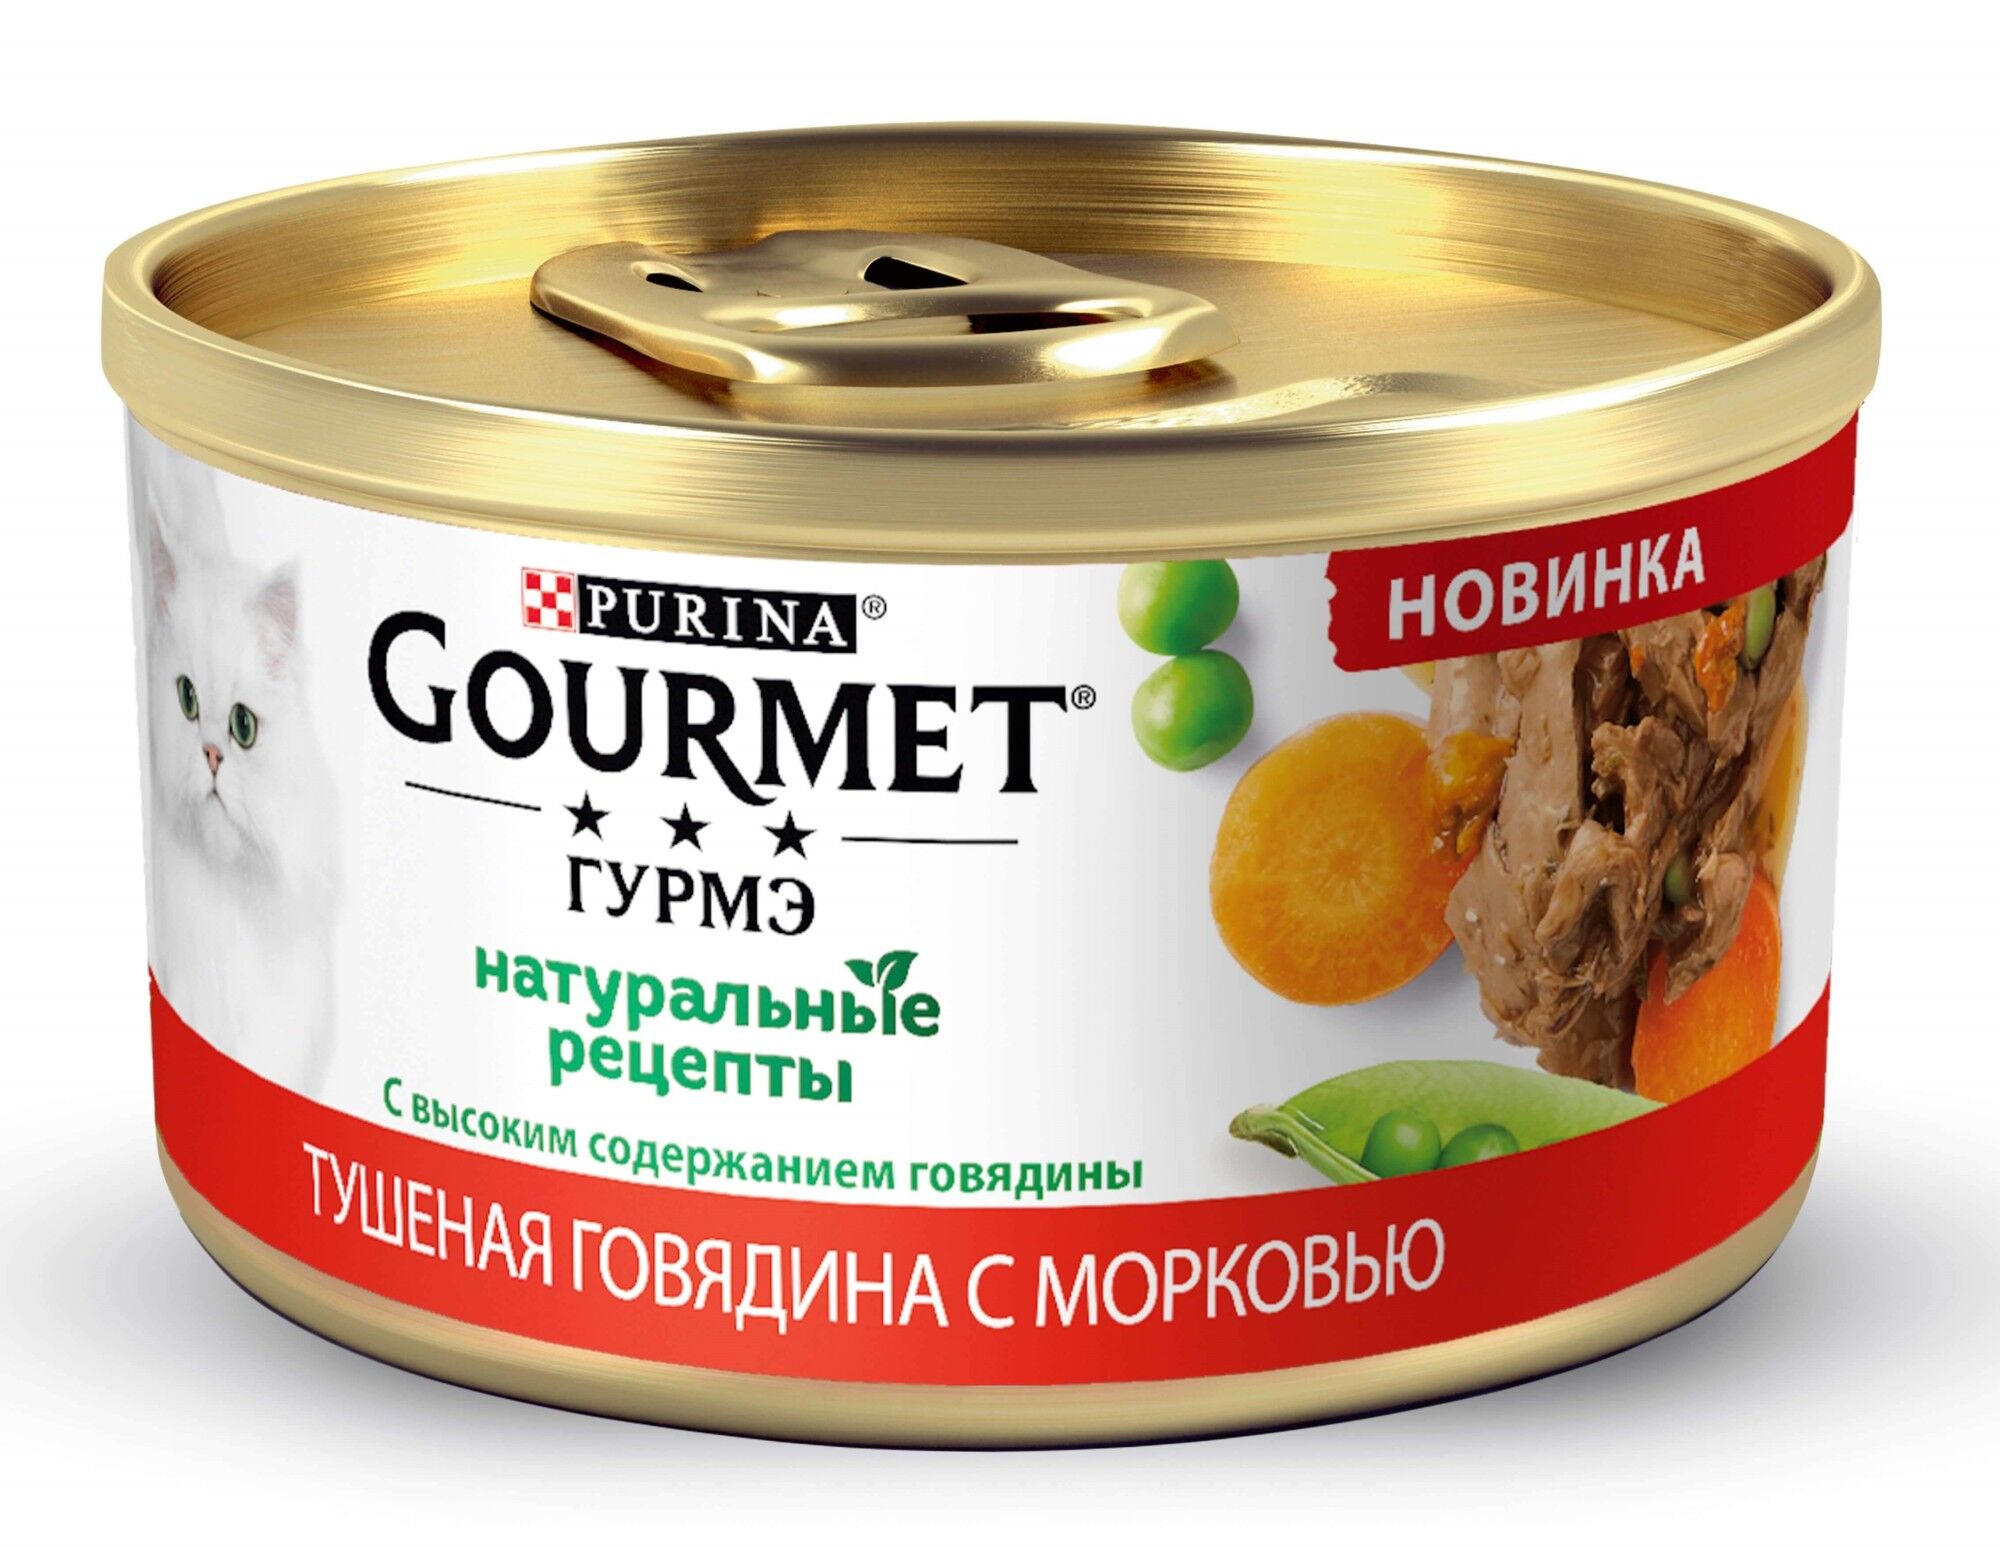 Гурмэ НатурРецепты Конс.д/к тушеная говядина морковь 85гр